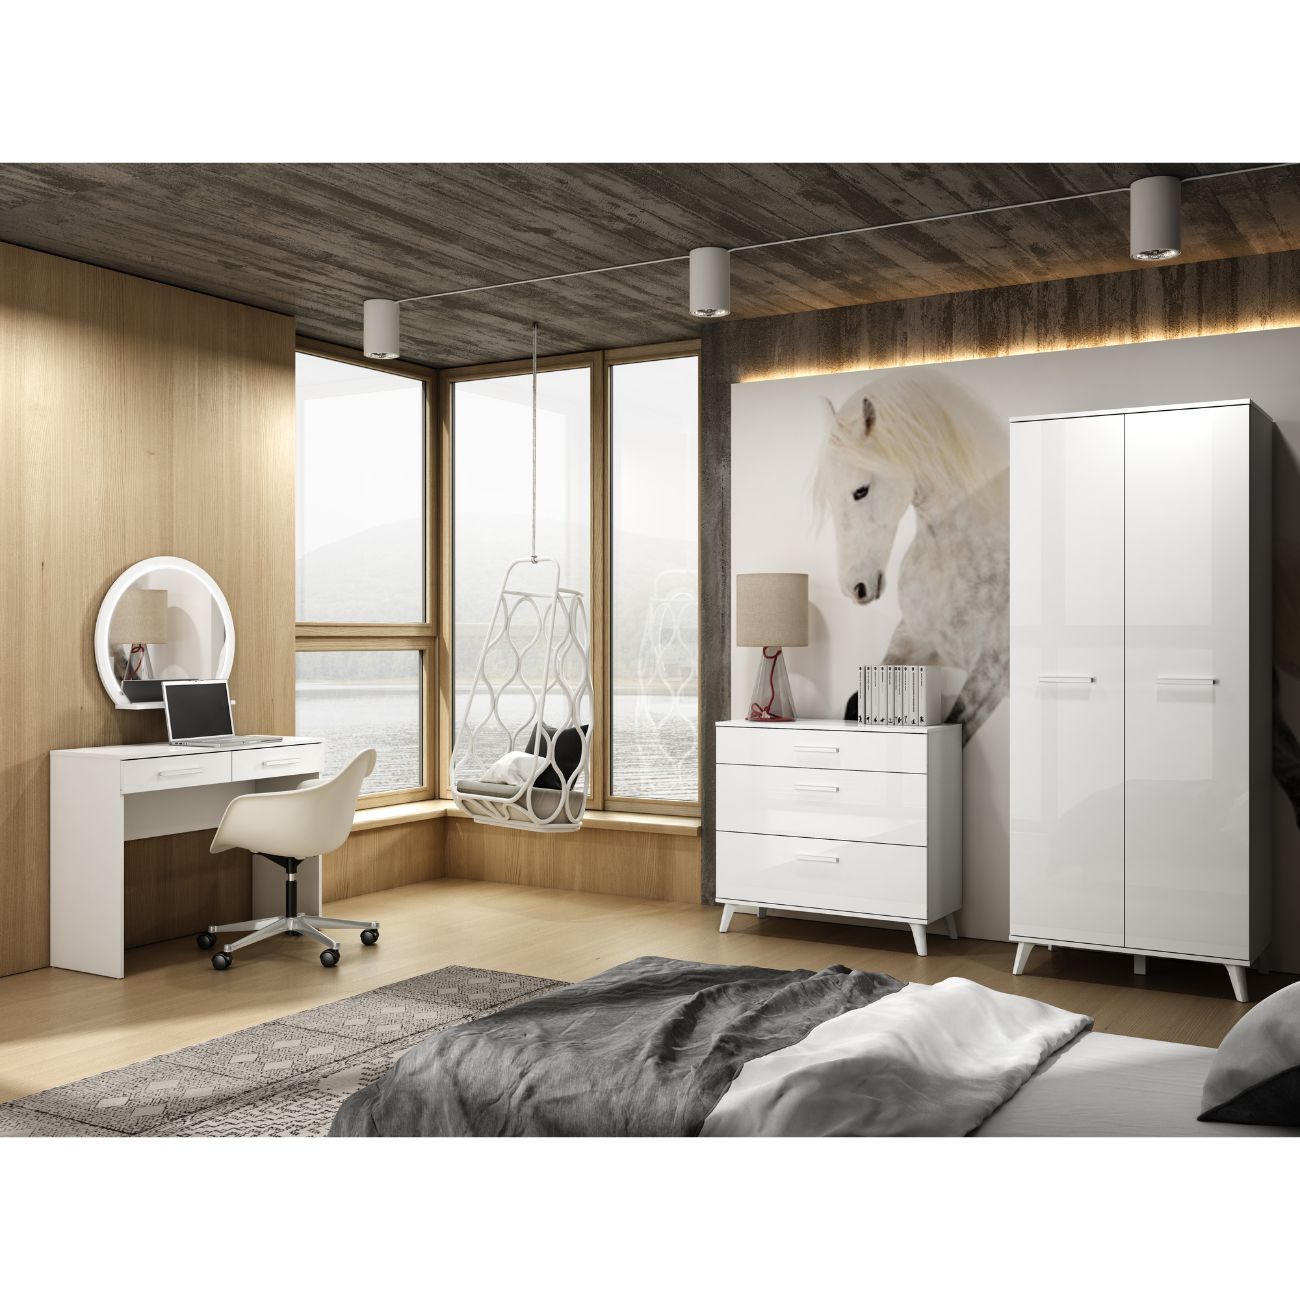 Zdjęcie przedstawiajace przykładową aranżację nowoczesnej sypialni z meblami Sekko. Na zdjęciu widoczna komoda z szufladami, szafa na ubrania oraz białe biurko Seko